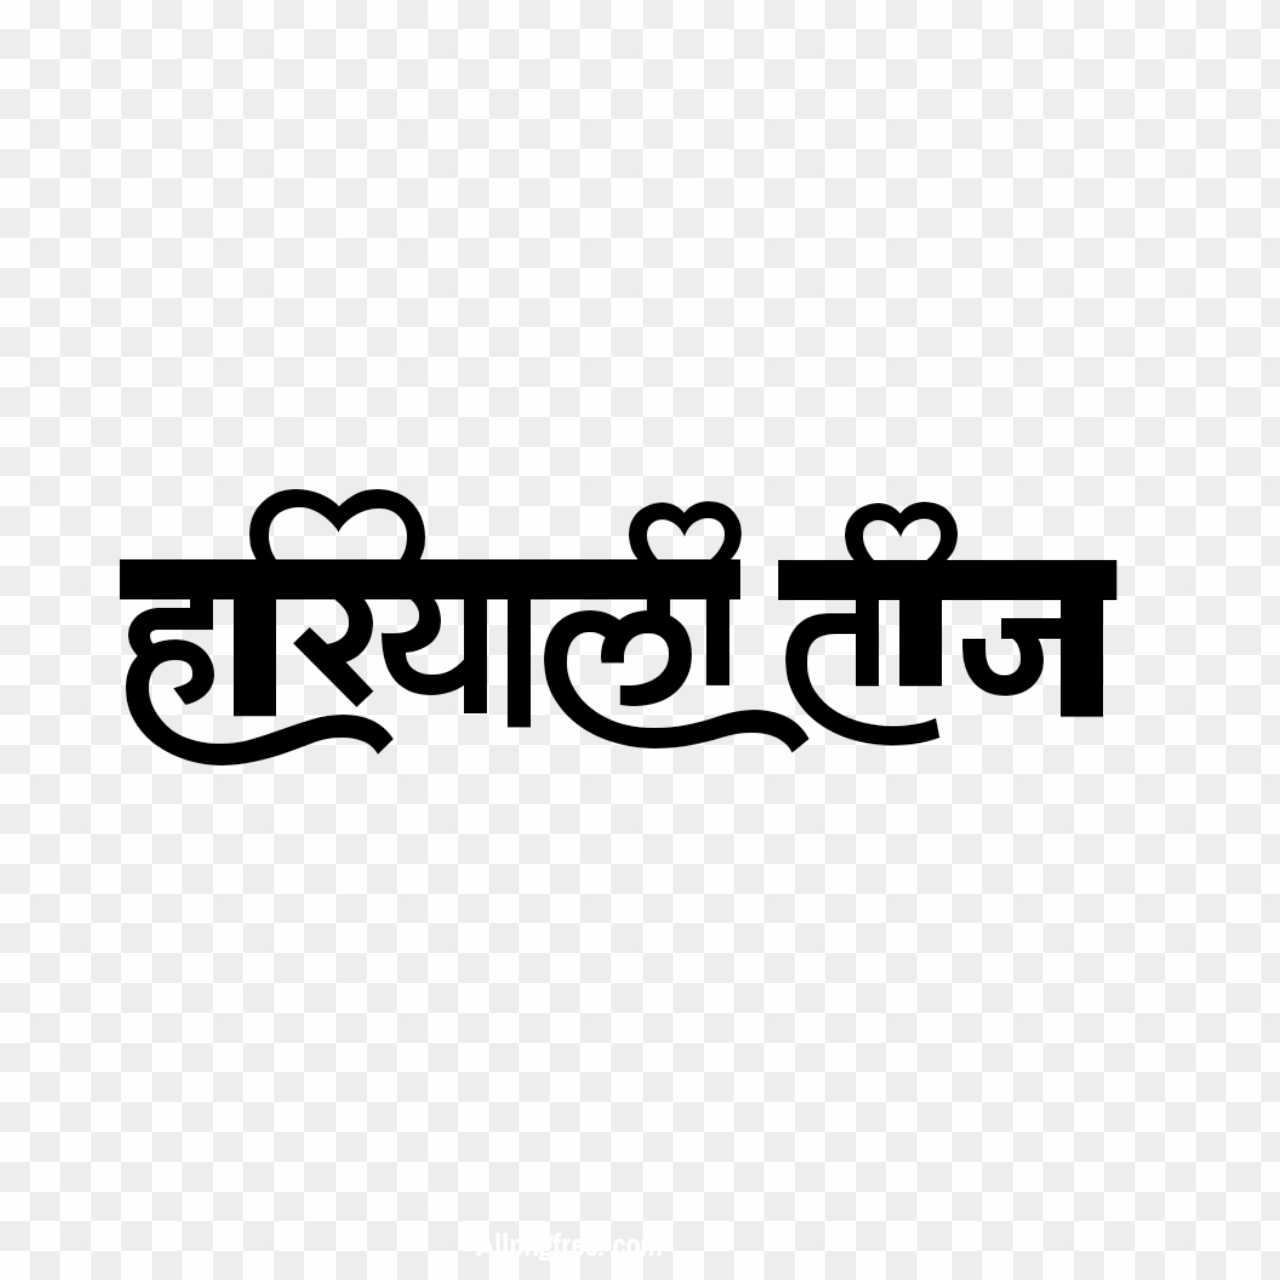 Stylish Hindi font Hariyali Teej Tak PNG images download